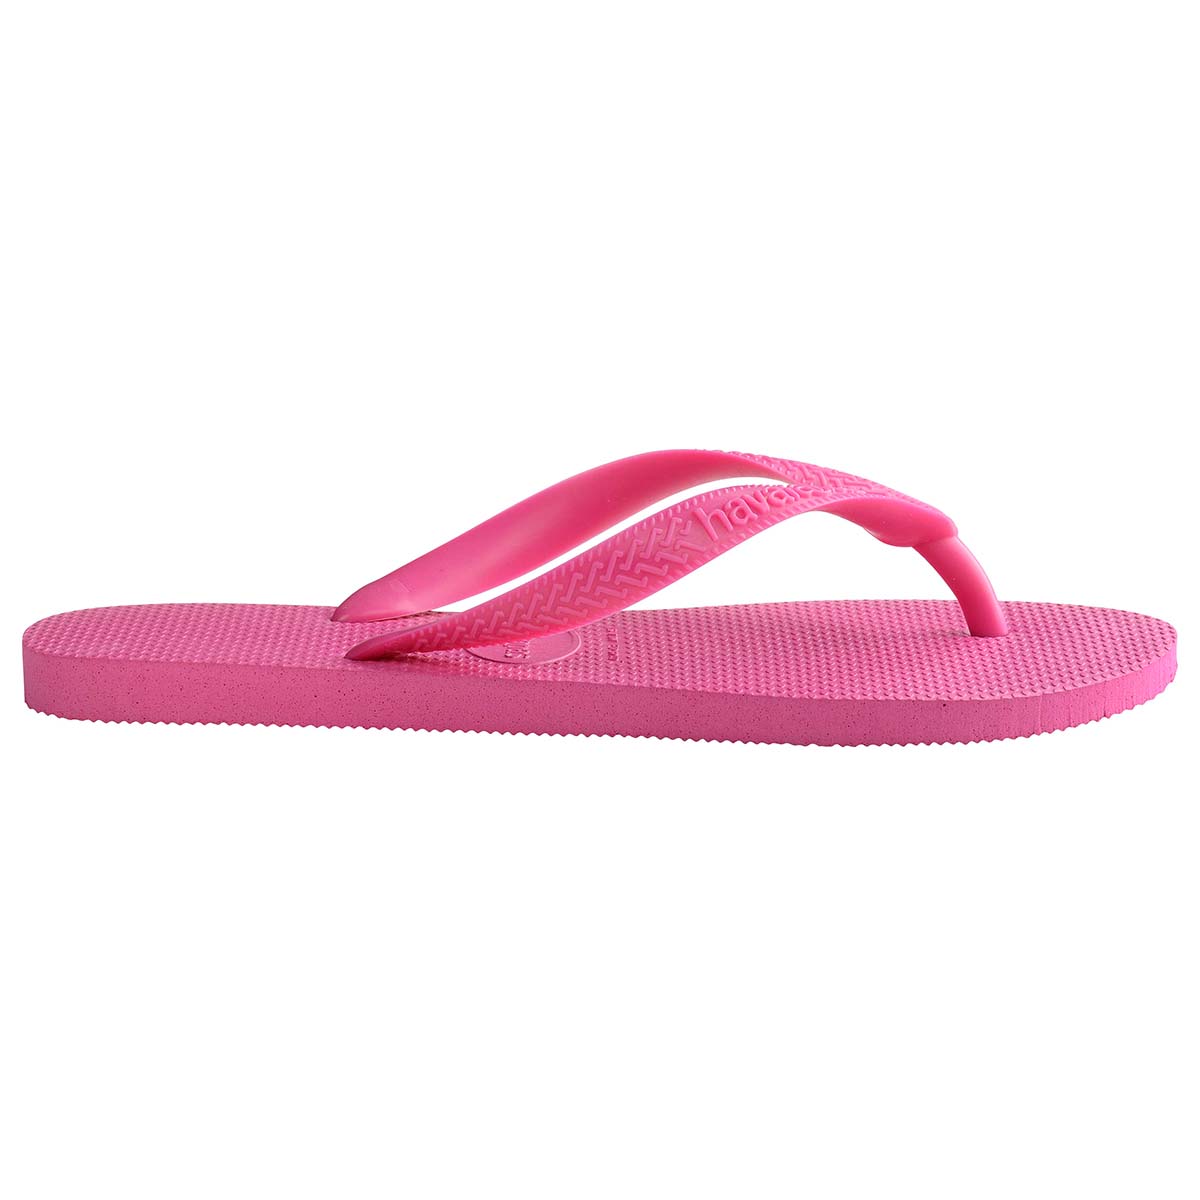 Havaianas Top Unisex Erwachsene Sandalen Zehentrenner Badelatschen 4000029 Pink